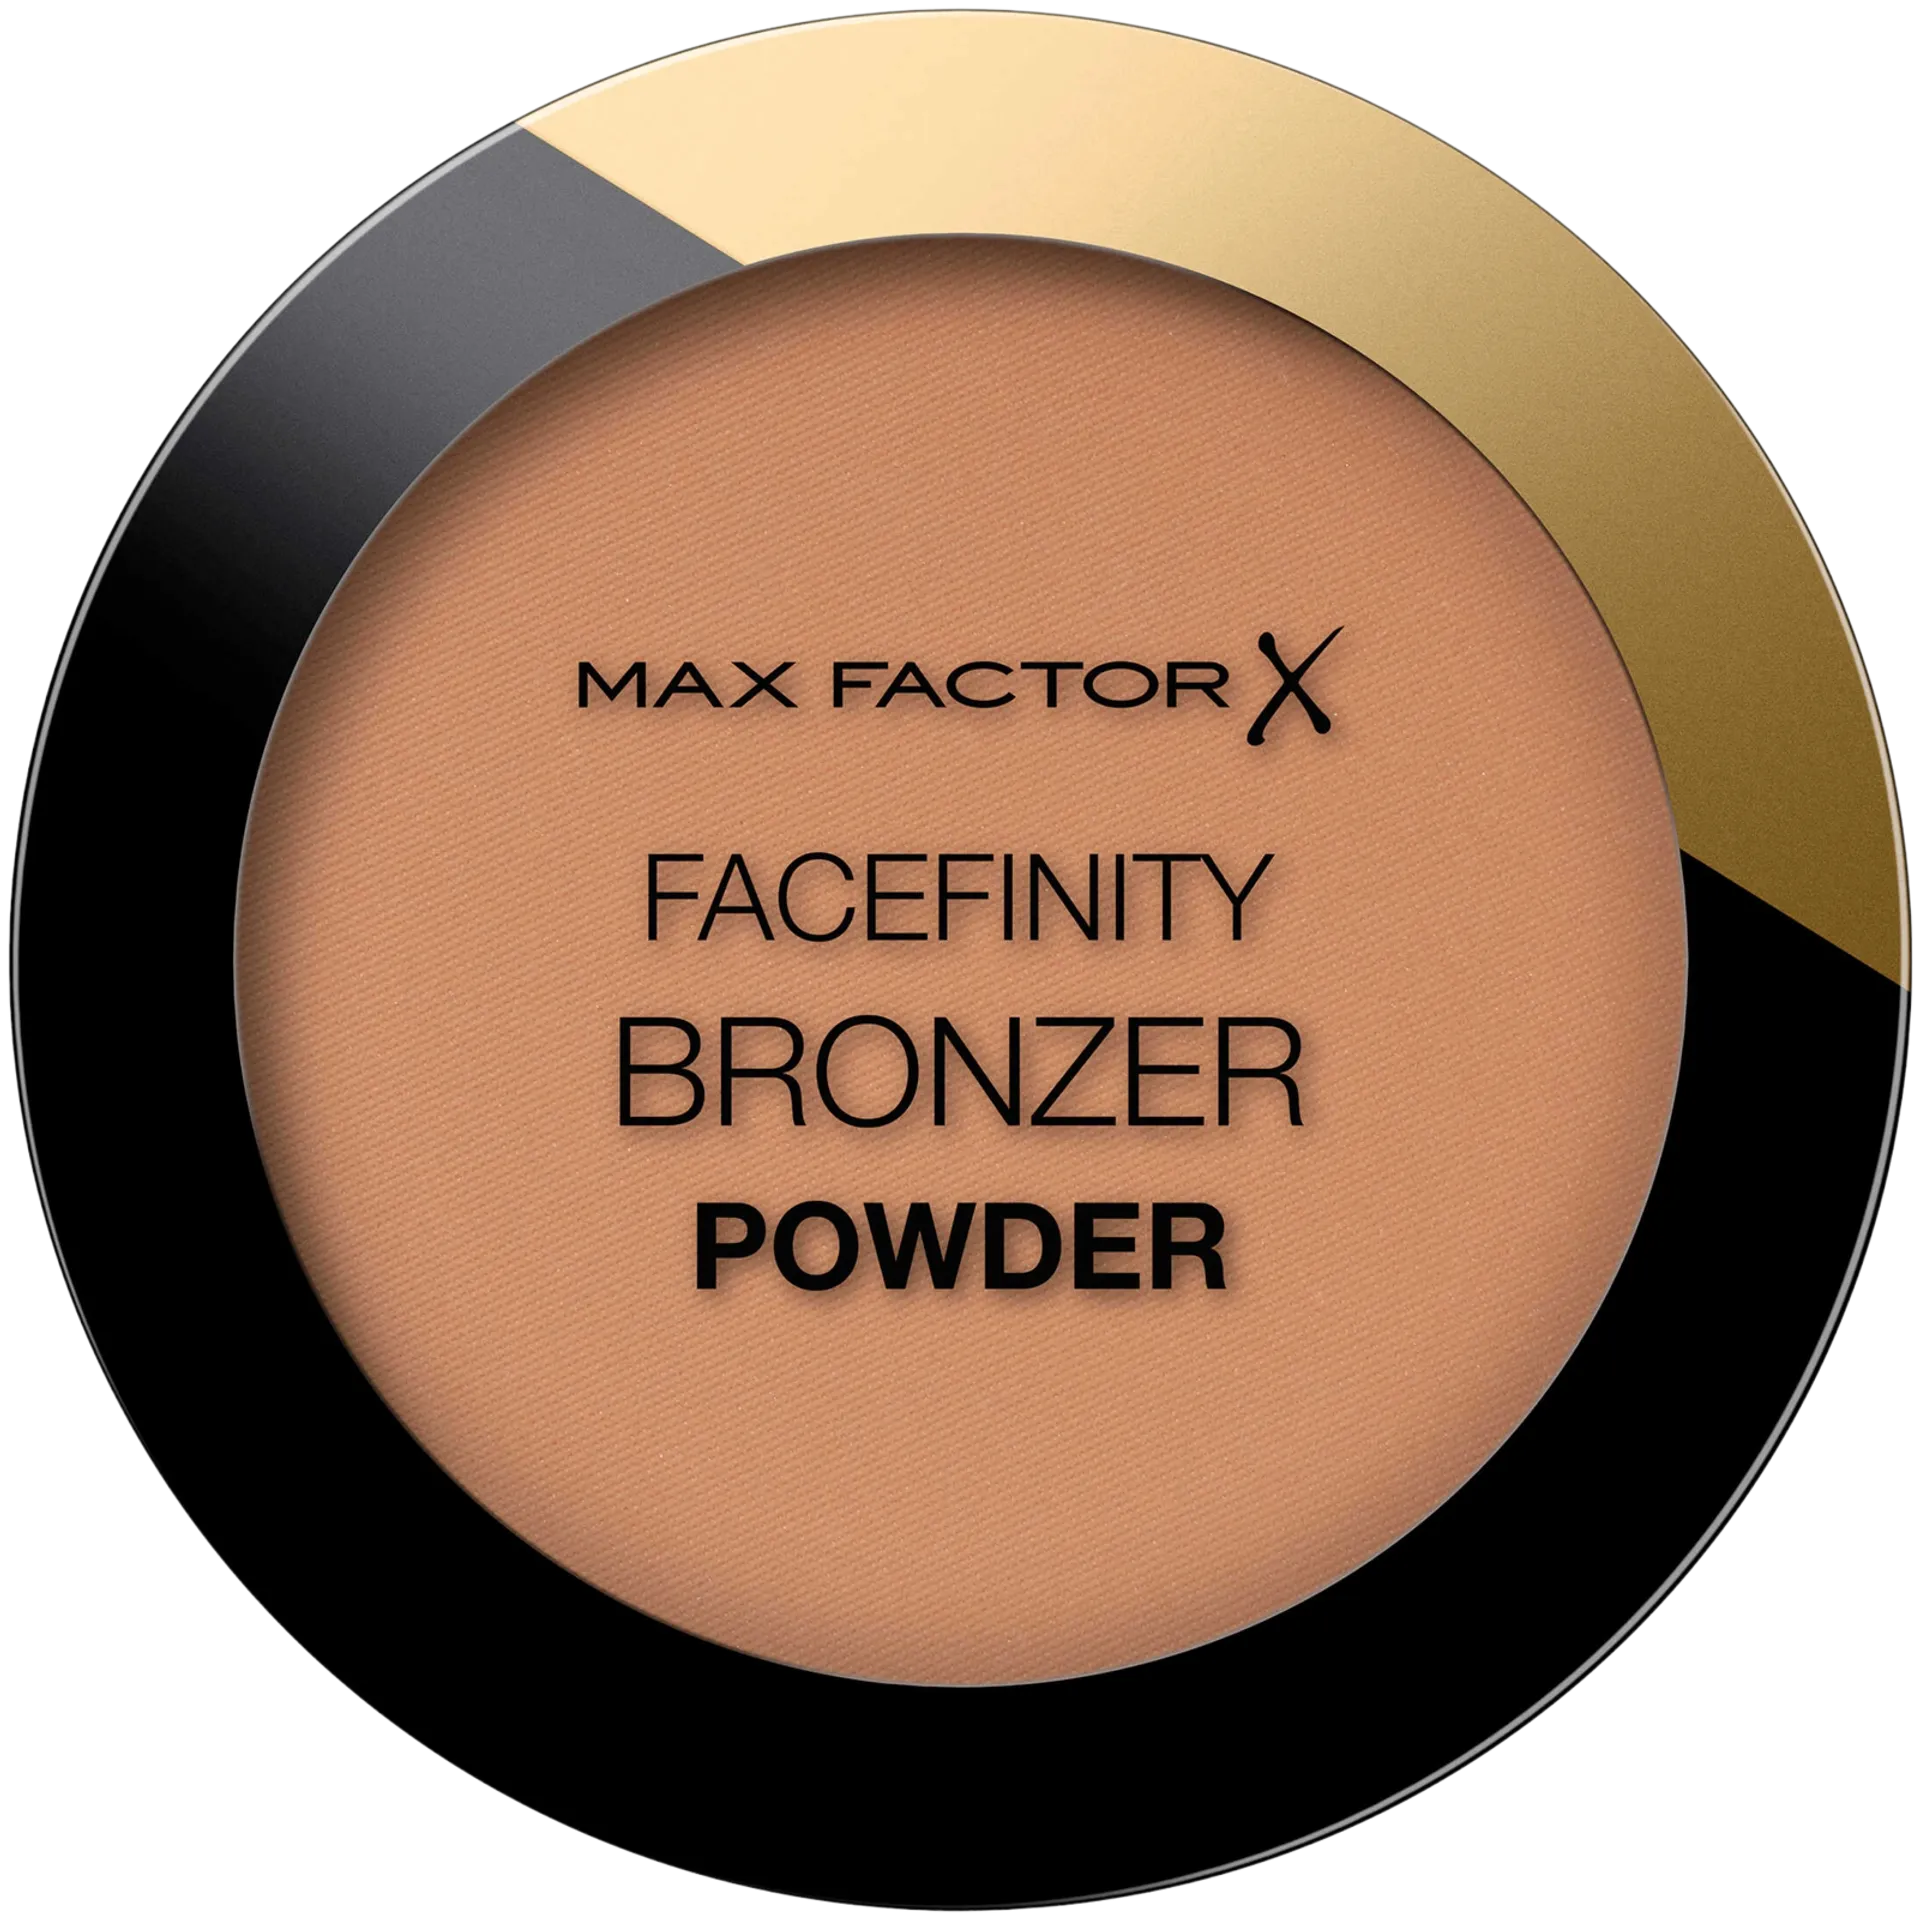 Max Factor Facefinity Powder Bronzer 01 Light Bronze 10 g aurinkopuuteri - 1